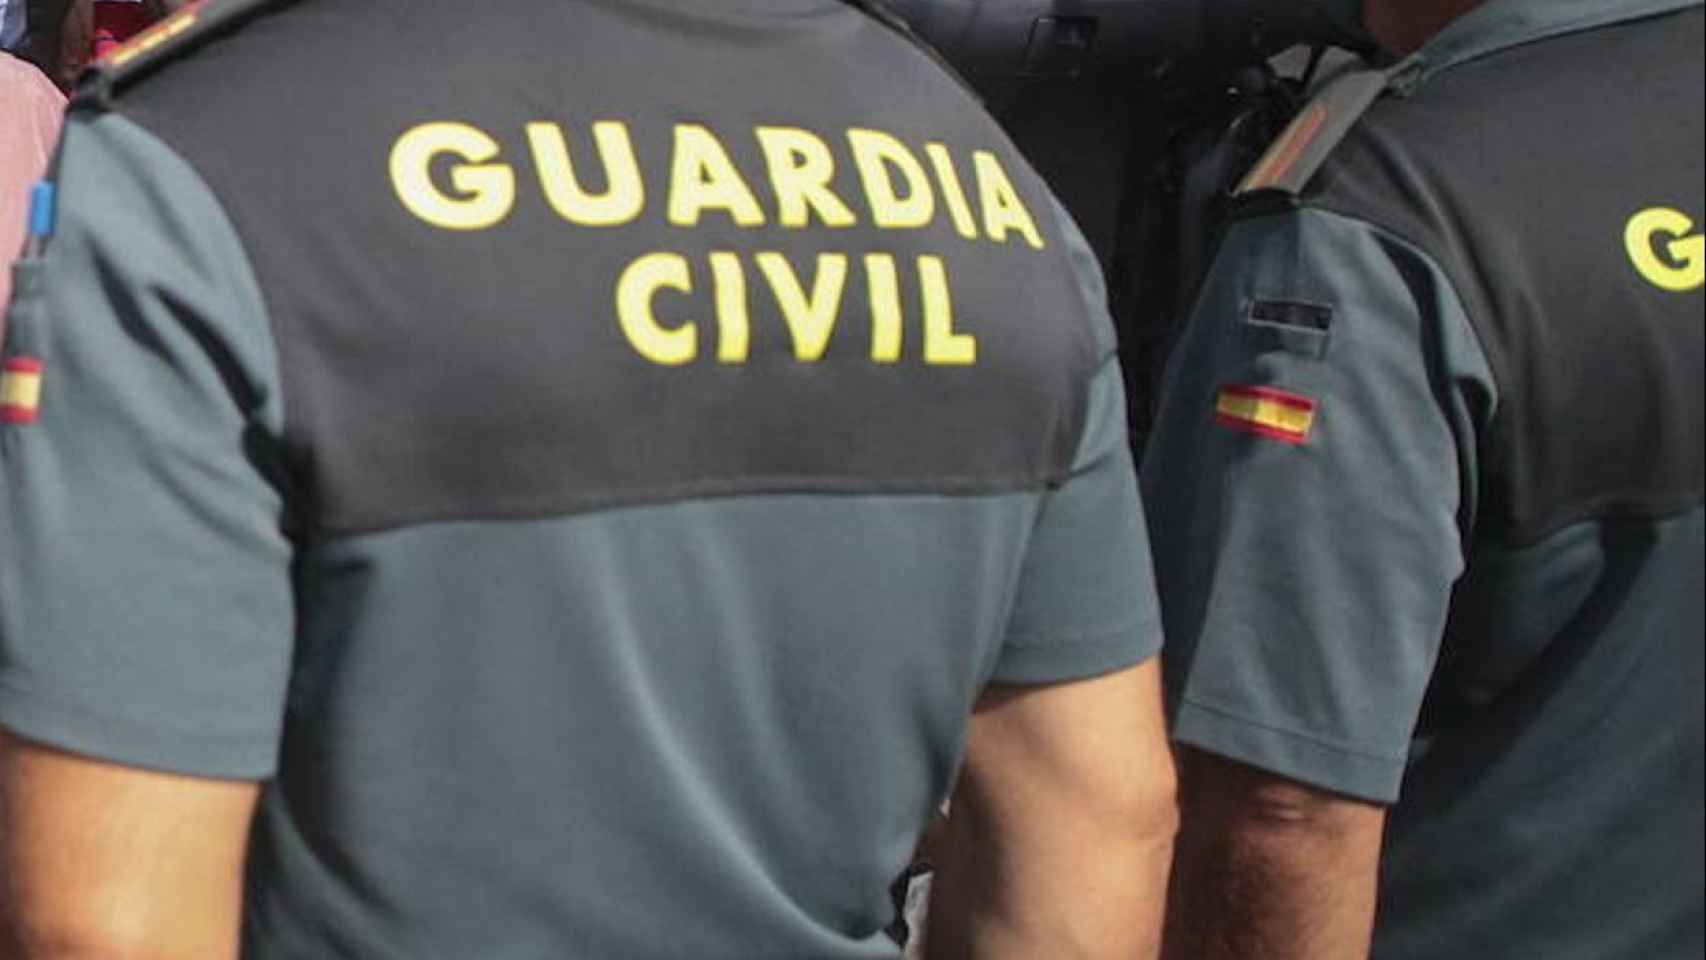 La Guardia Civil se ha hecho cargo de la investigación.